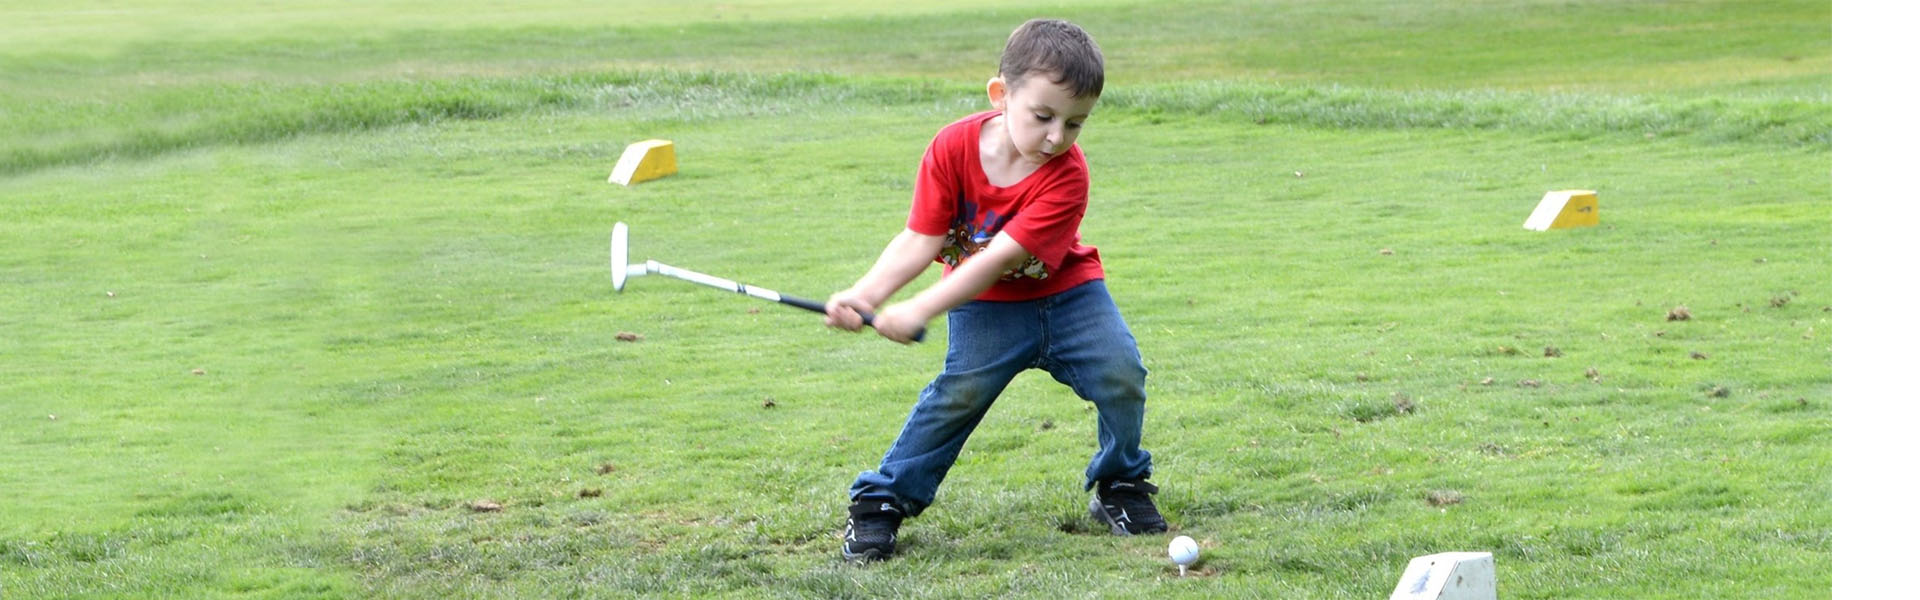 image of child golfing